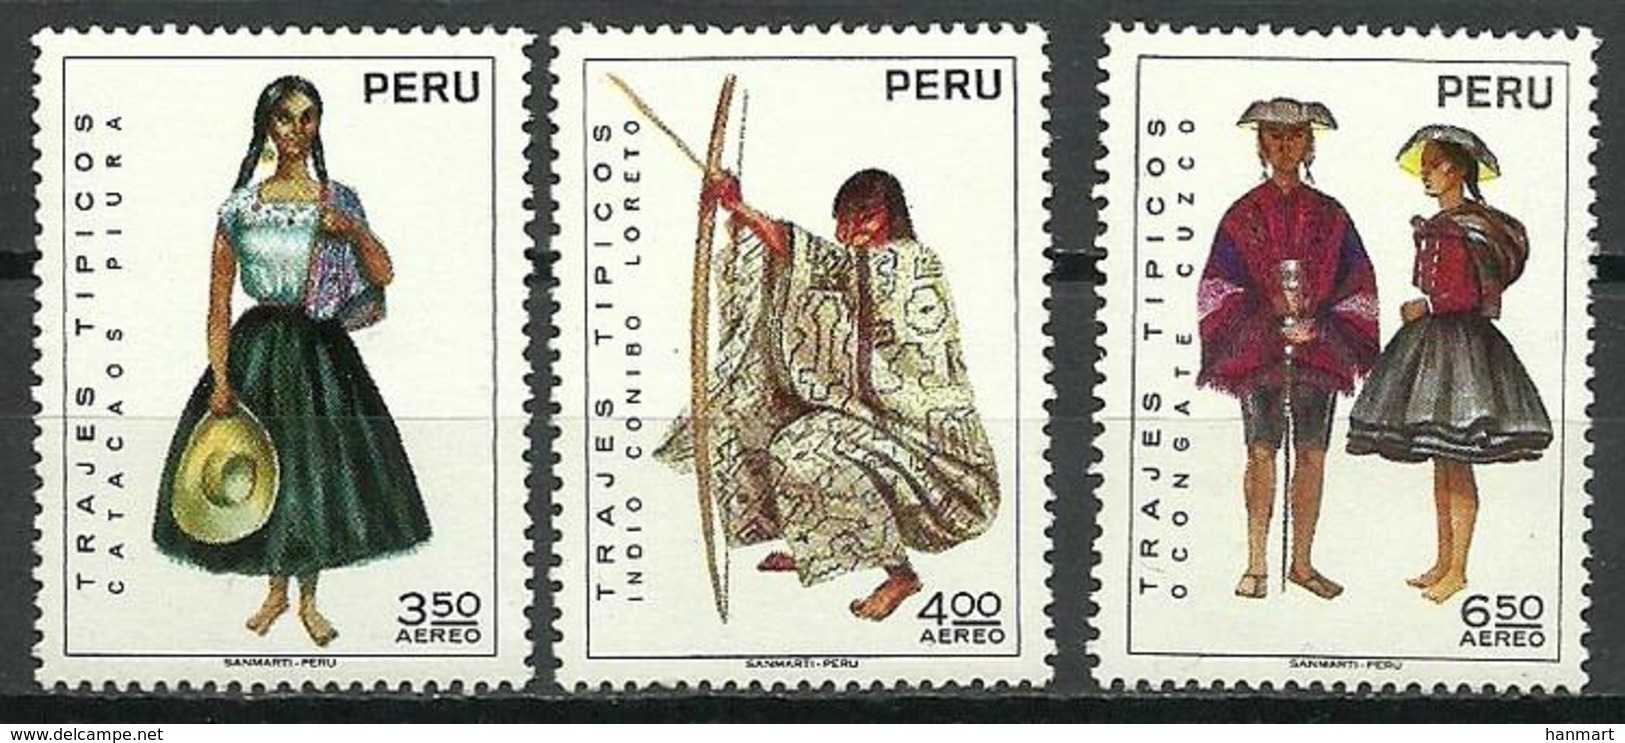 Peru 1972 Mi 872-874 MNH ( ZS3 PRU872-874dav106C ) - Costumes